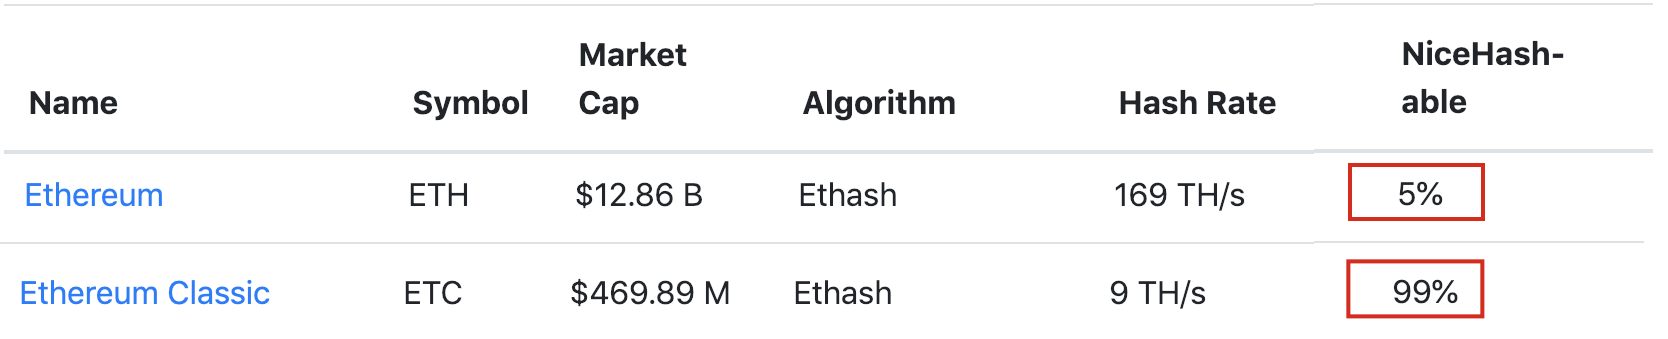 Ethereum Classic Hash Rate